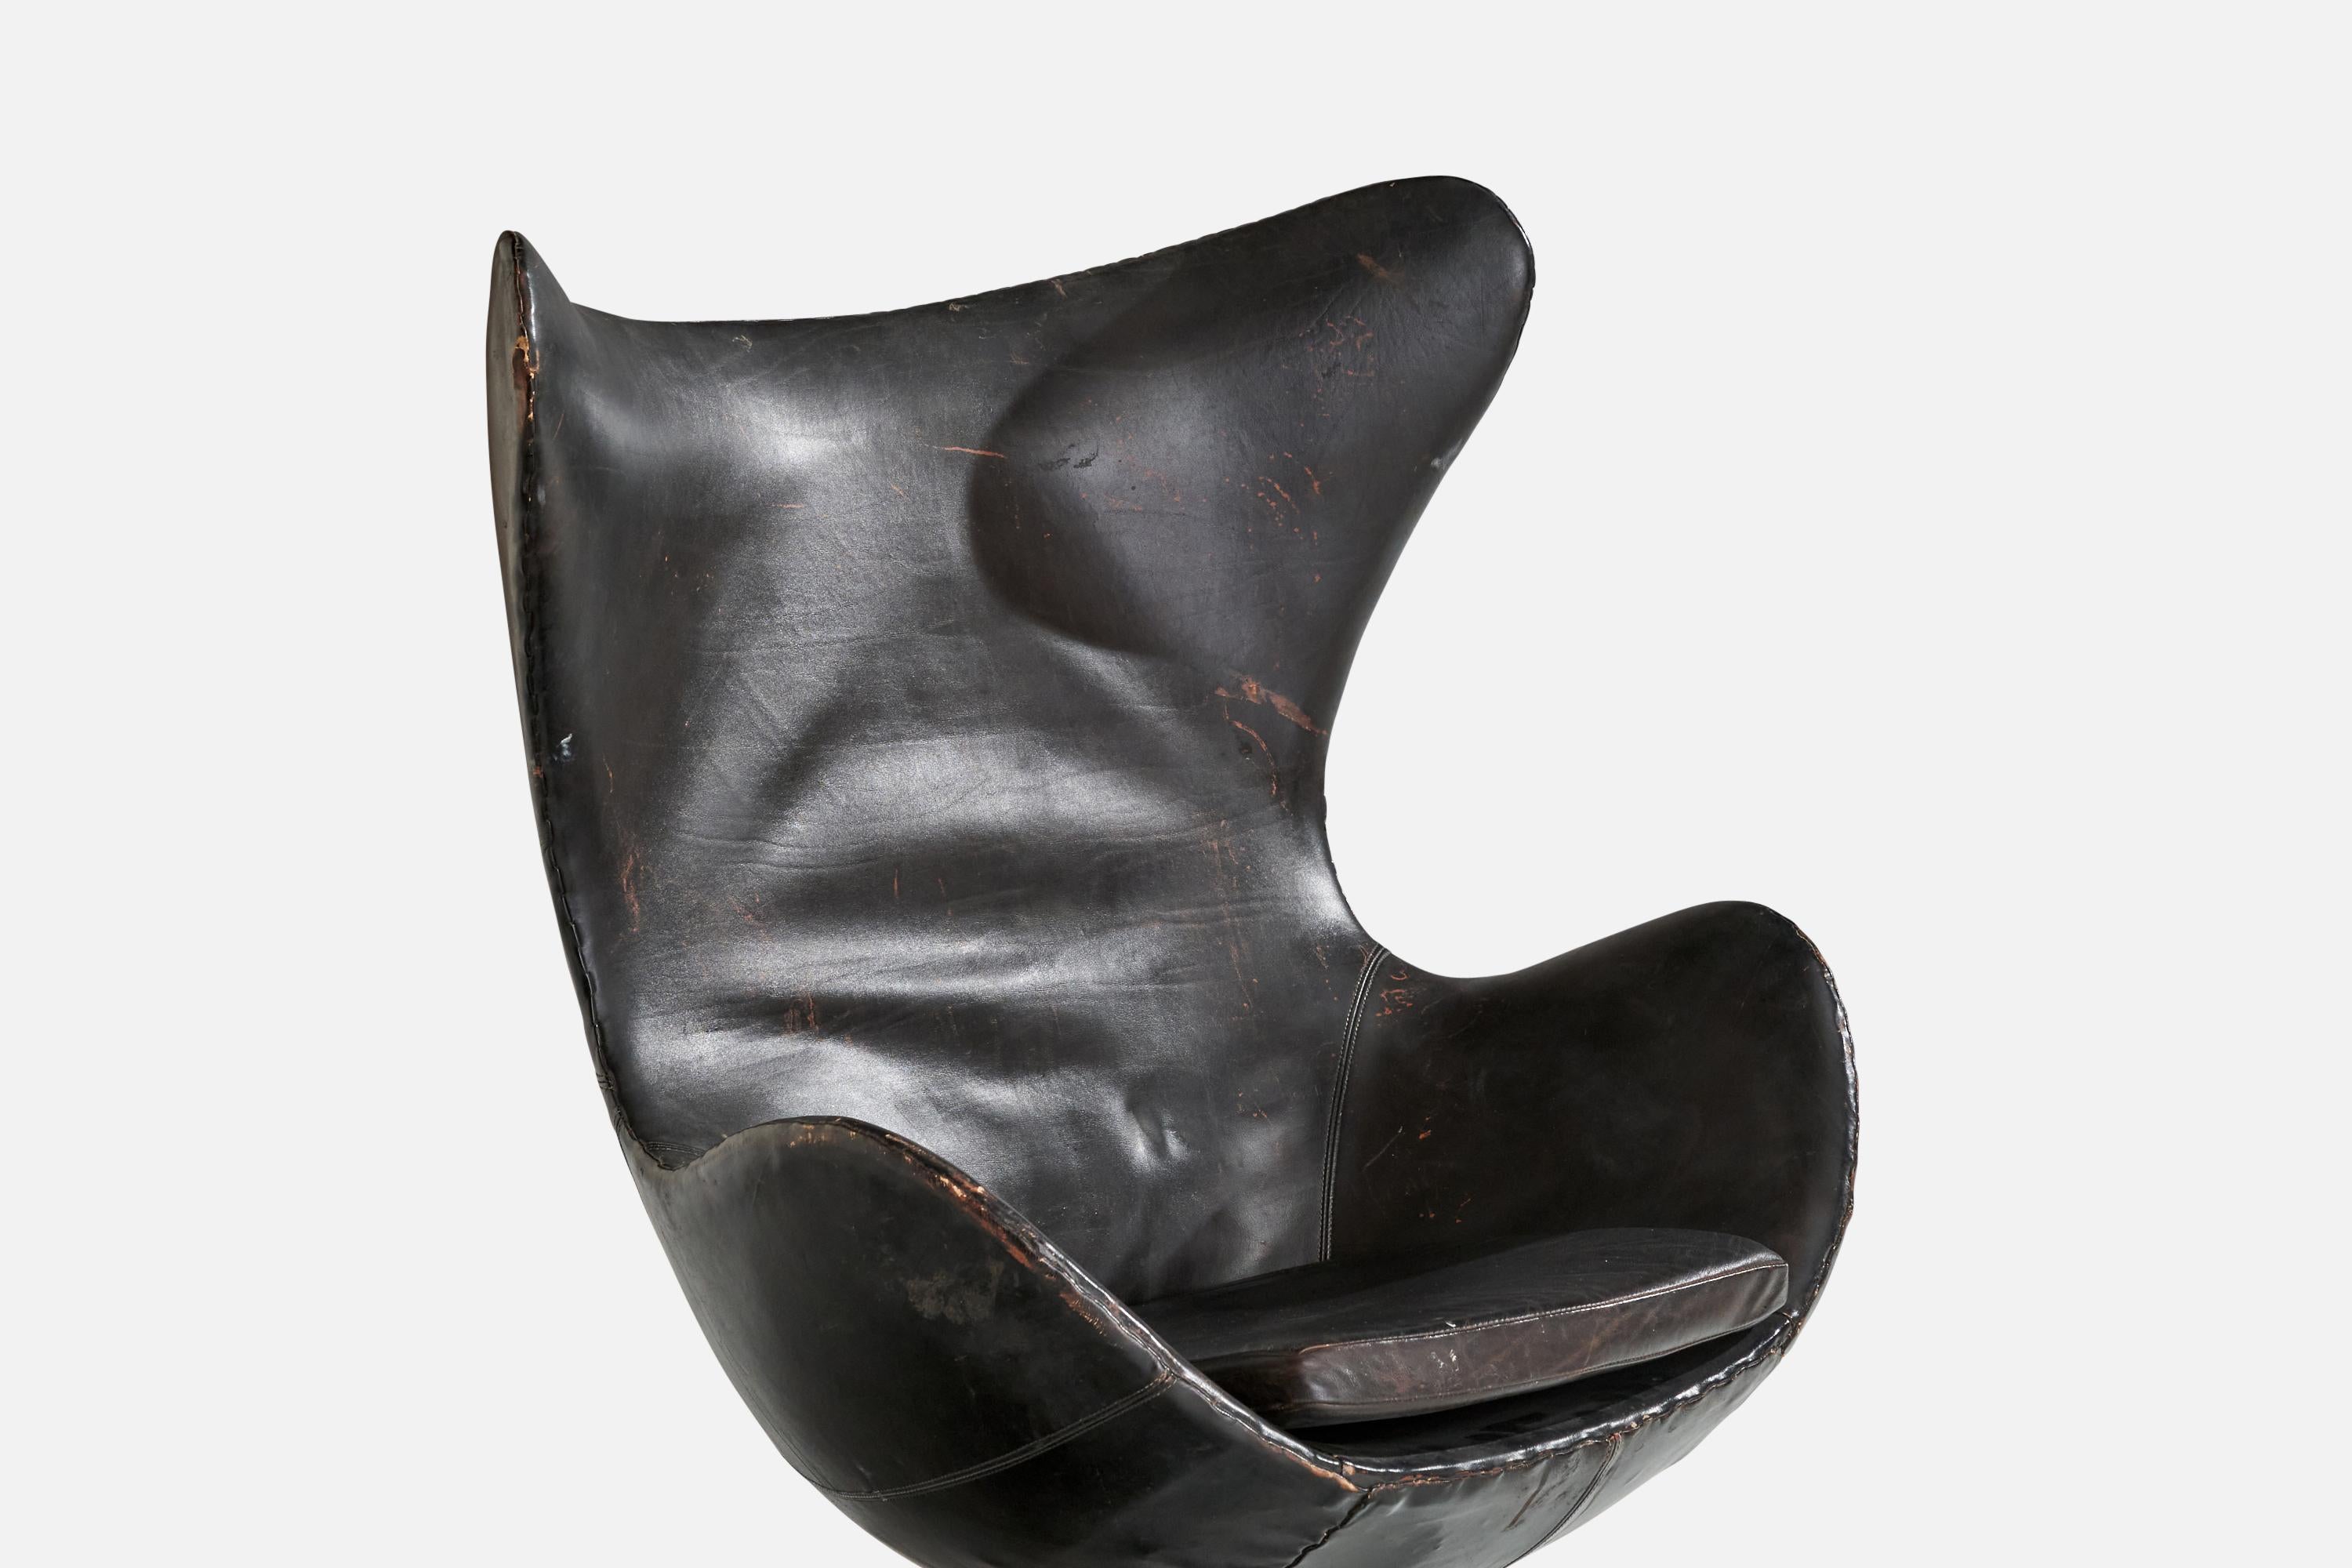 Arne Jacobsen, chaises longues 